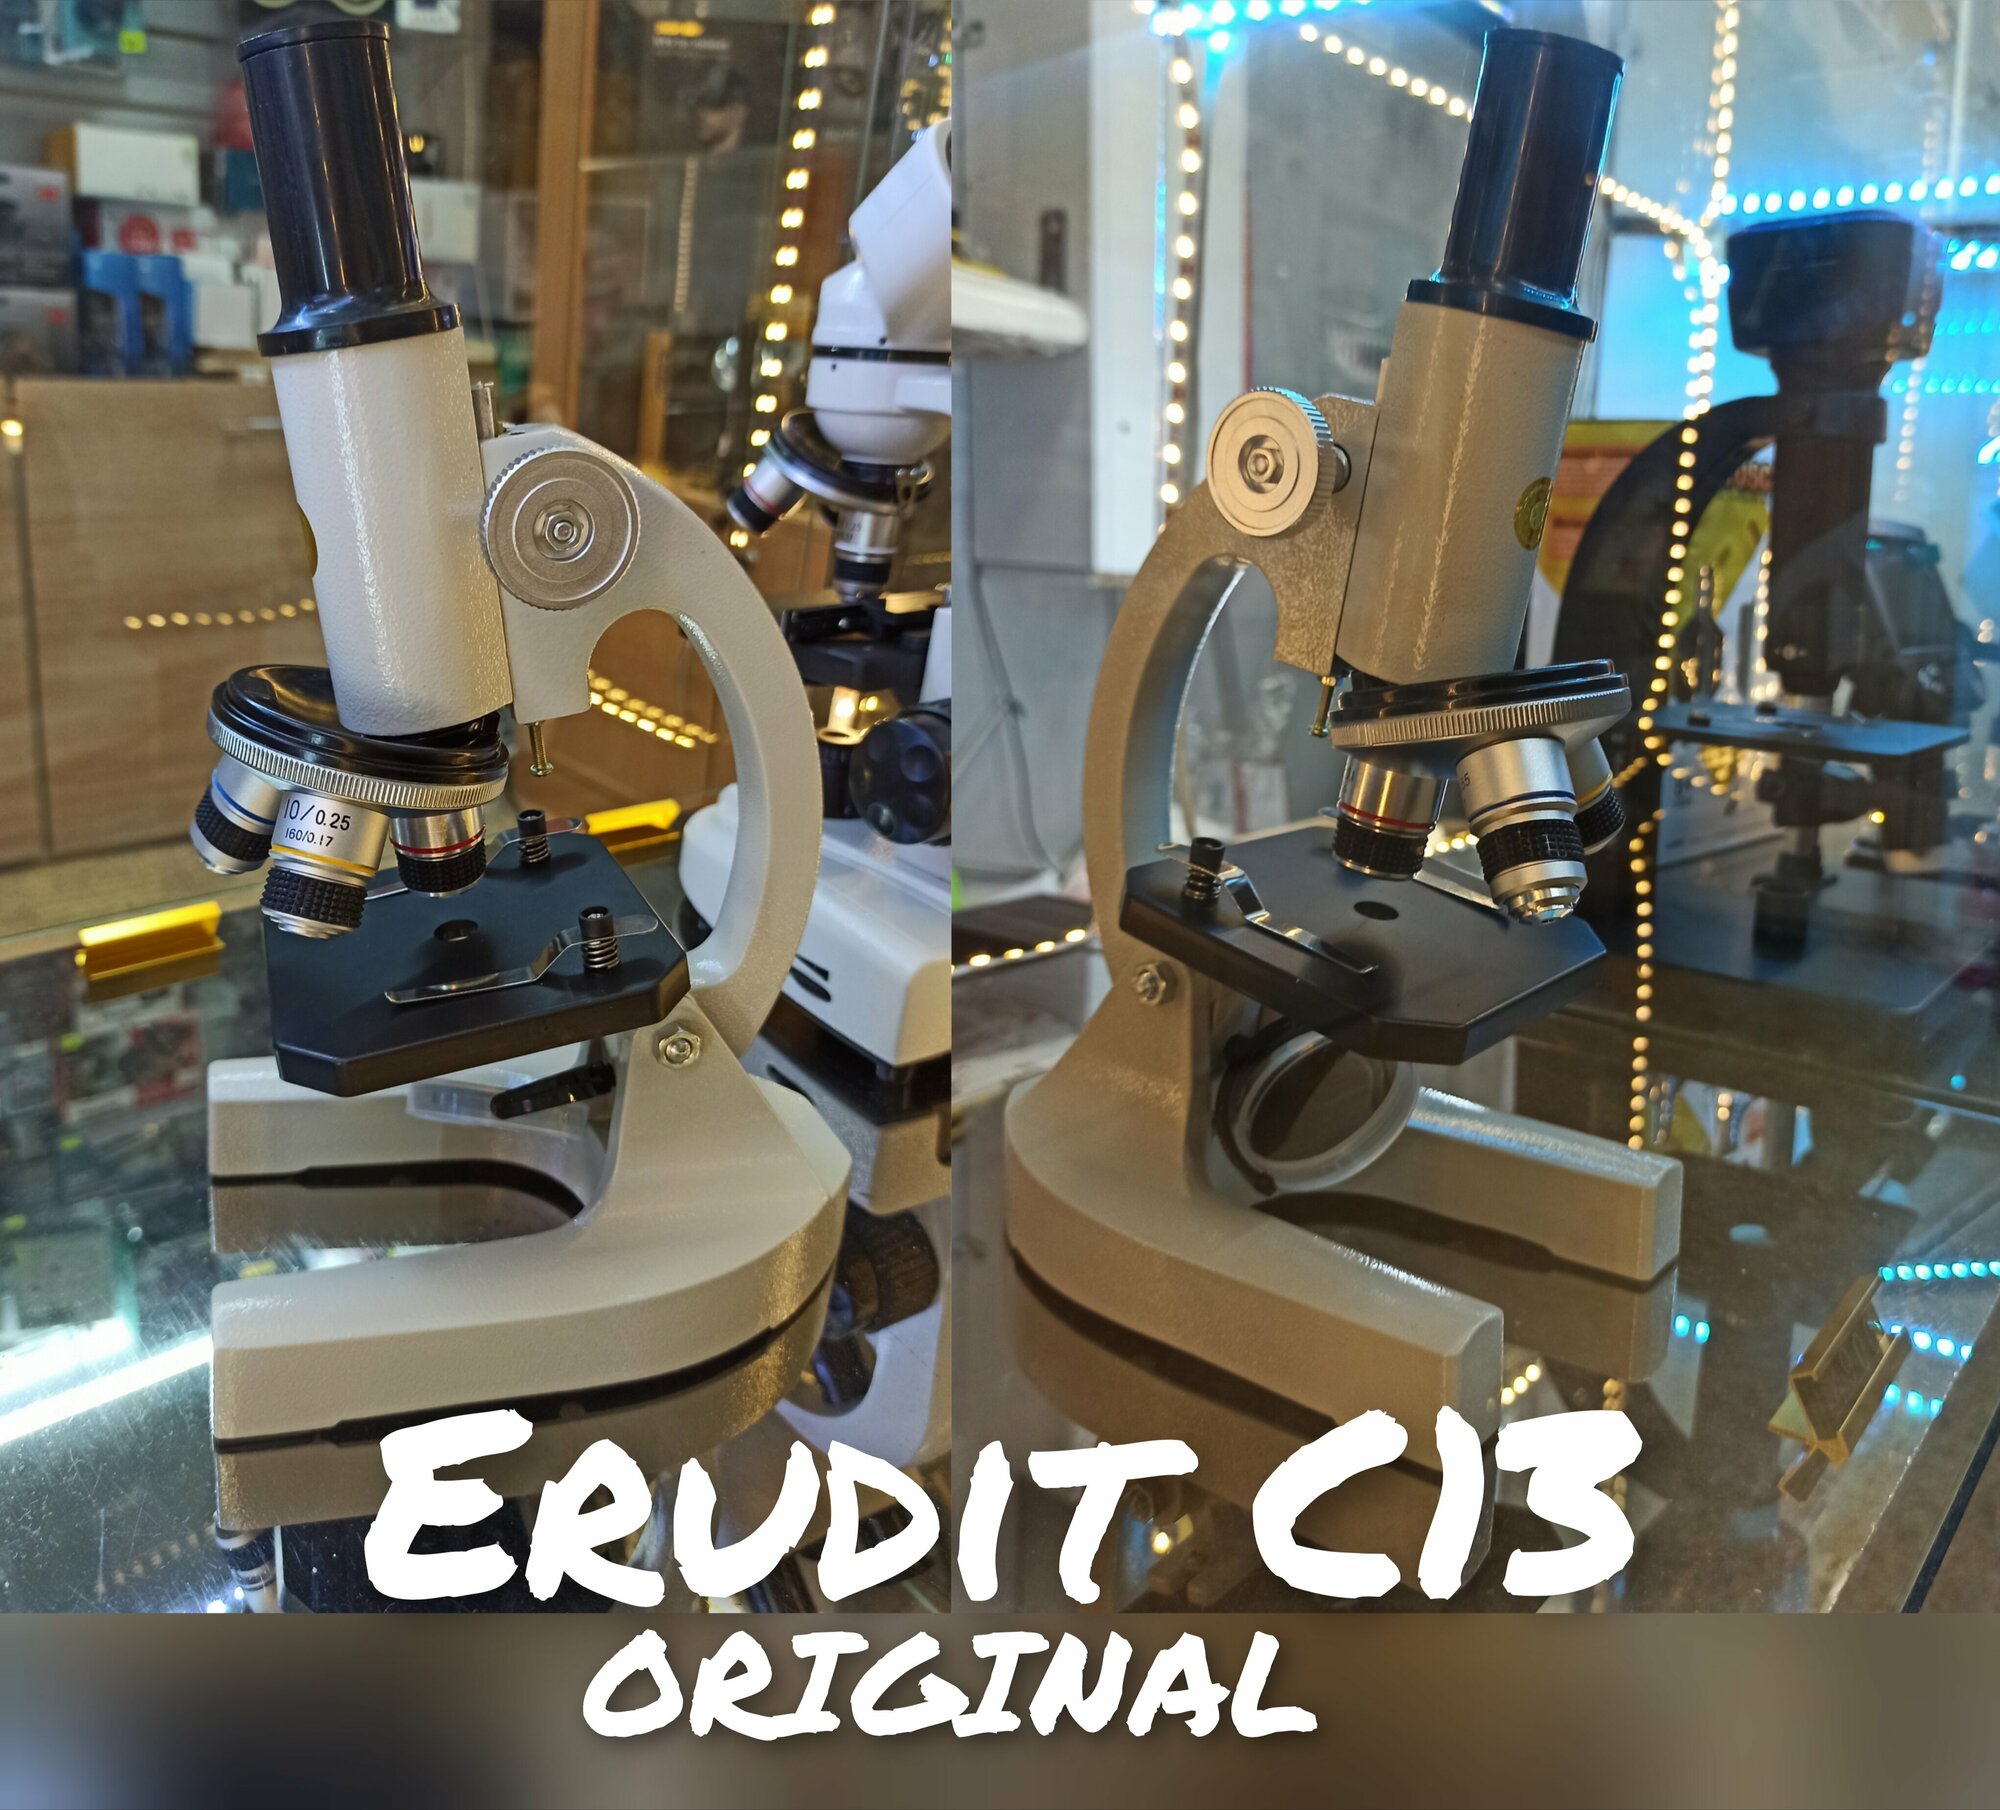 Микроскоп Erudit C13